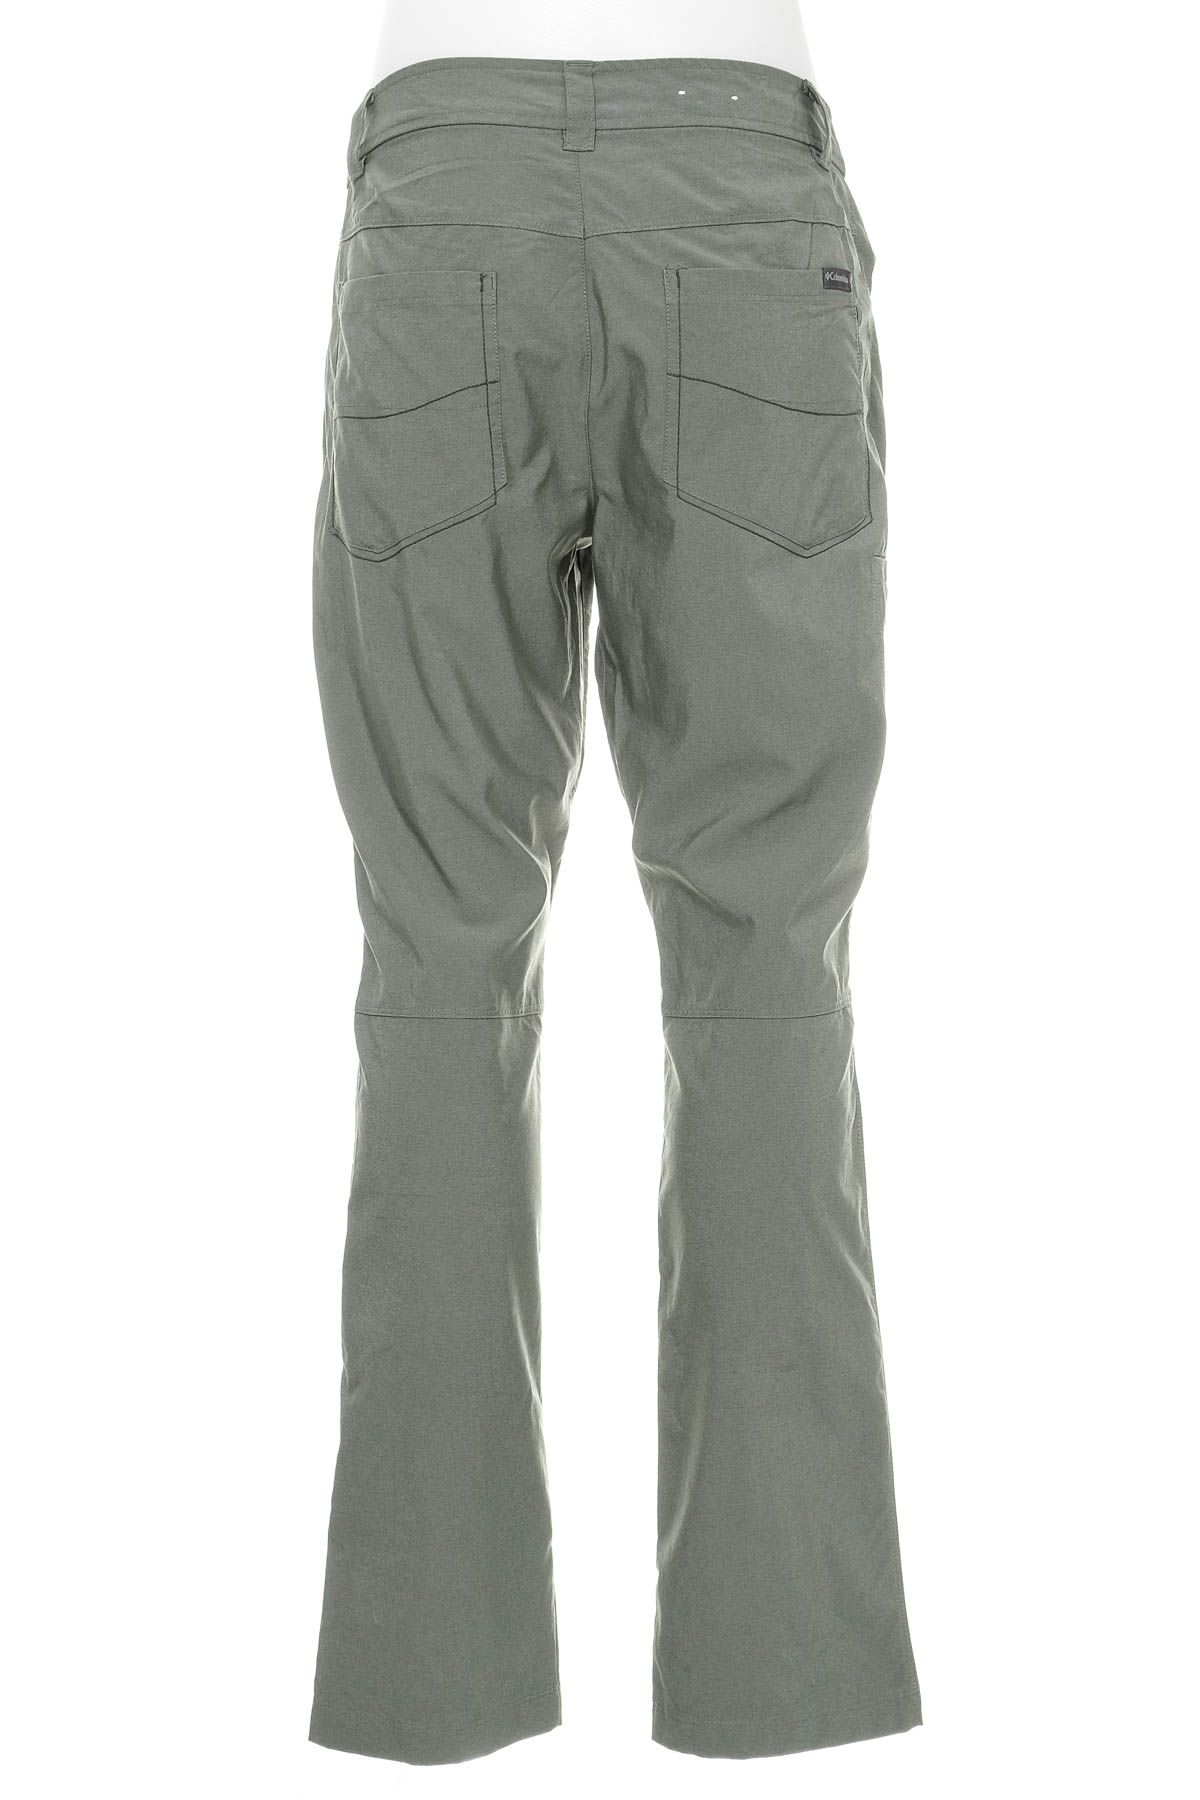 Pantalon pentru bărbați - Columbia - 1